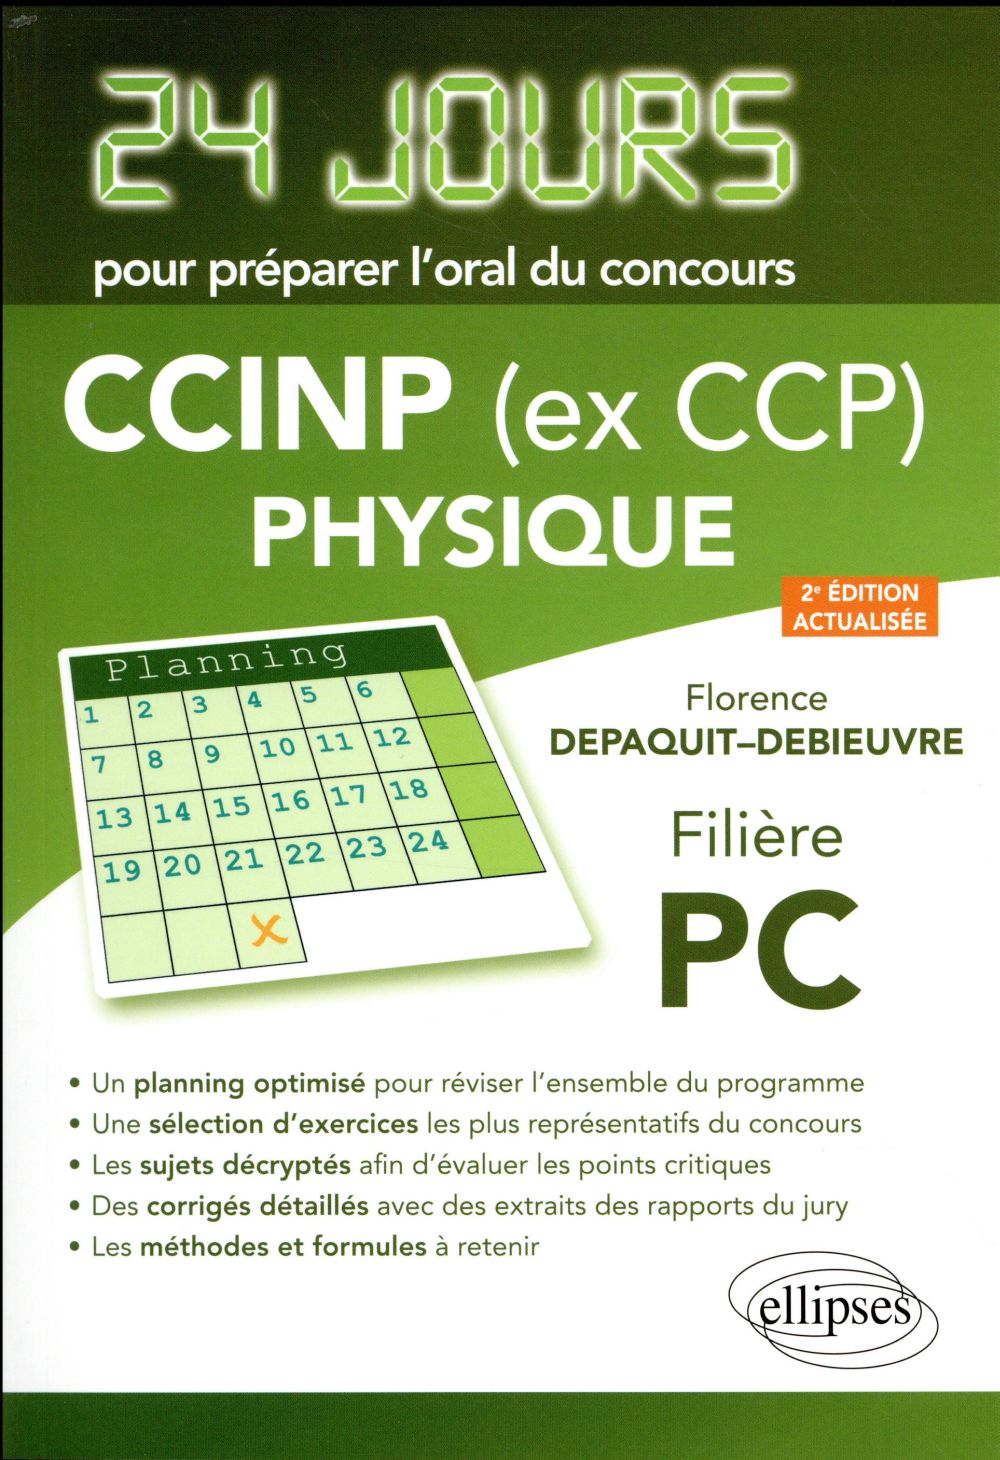 PHYSIQUE 24 JOURS POUR PREPARER L ORAL DU CONCOURS CCINP (EX CCP) - FILIERE PC - 2E EDITION ACTUALIS